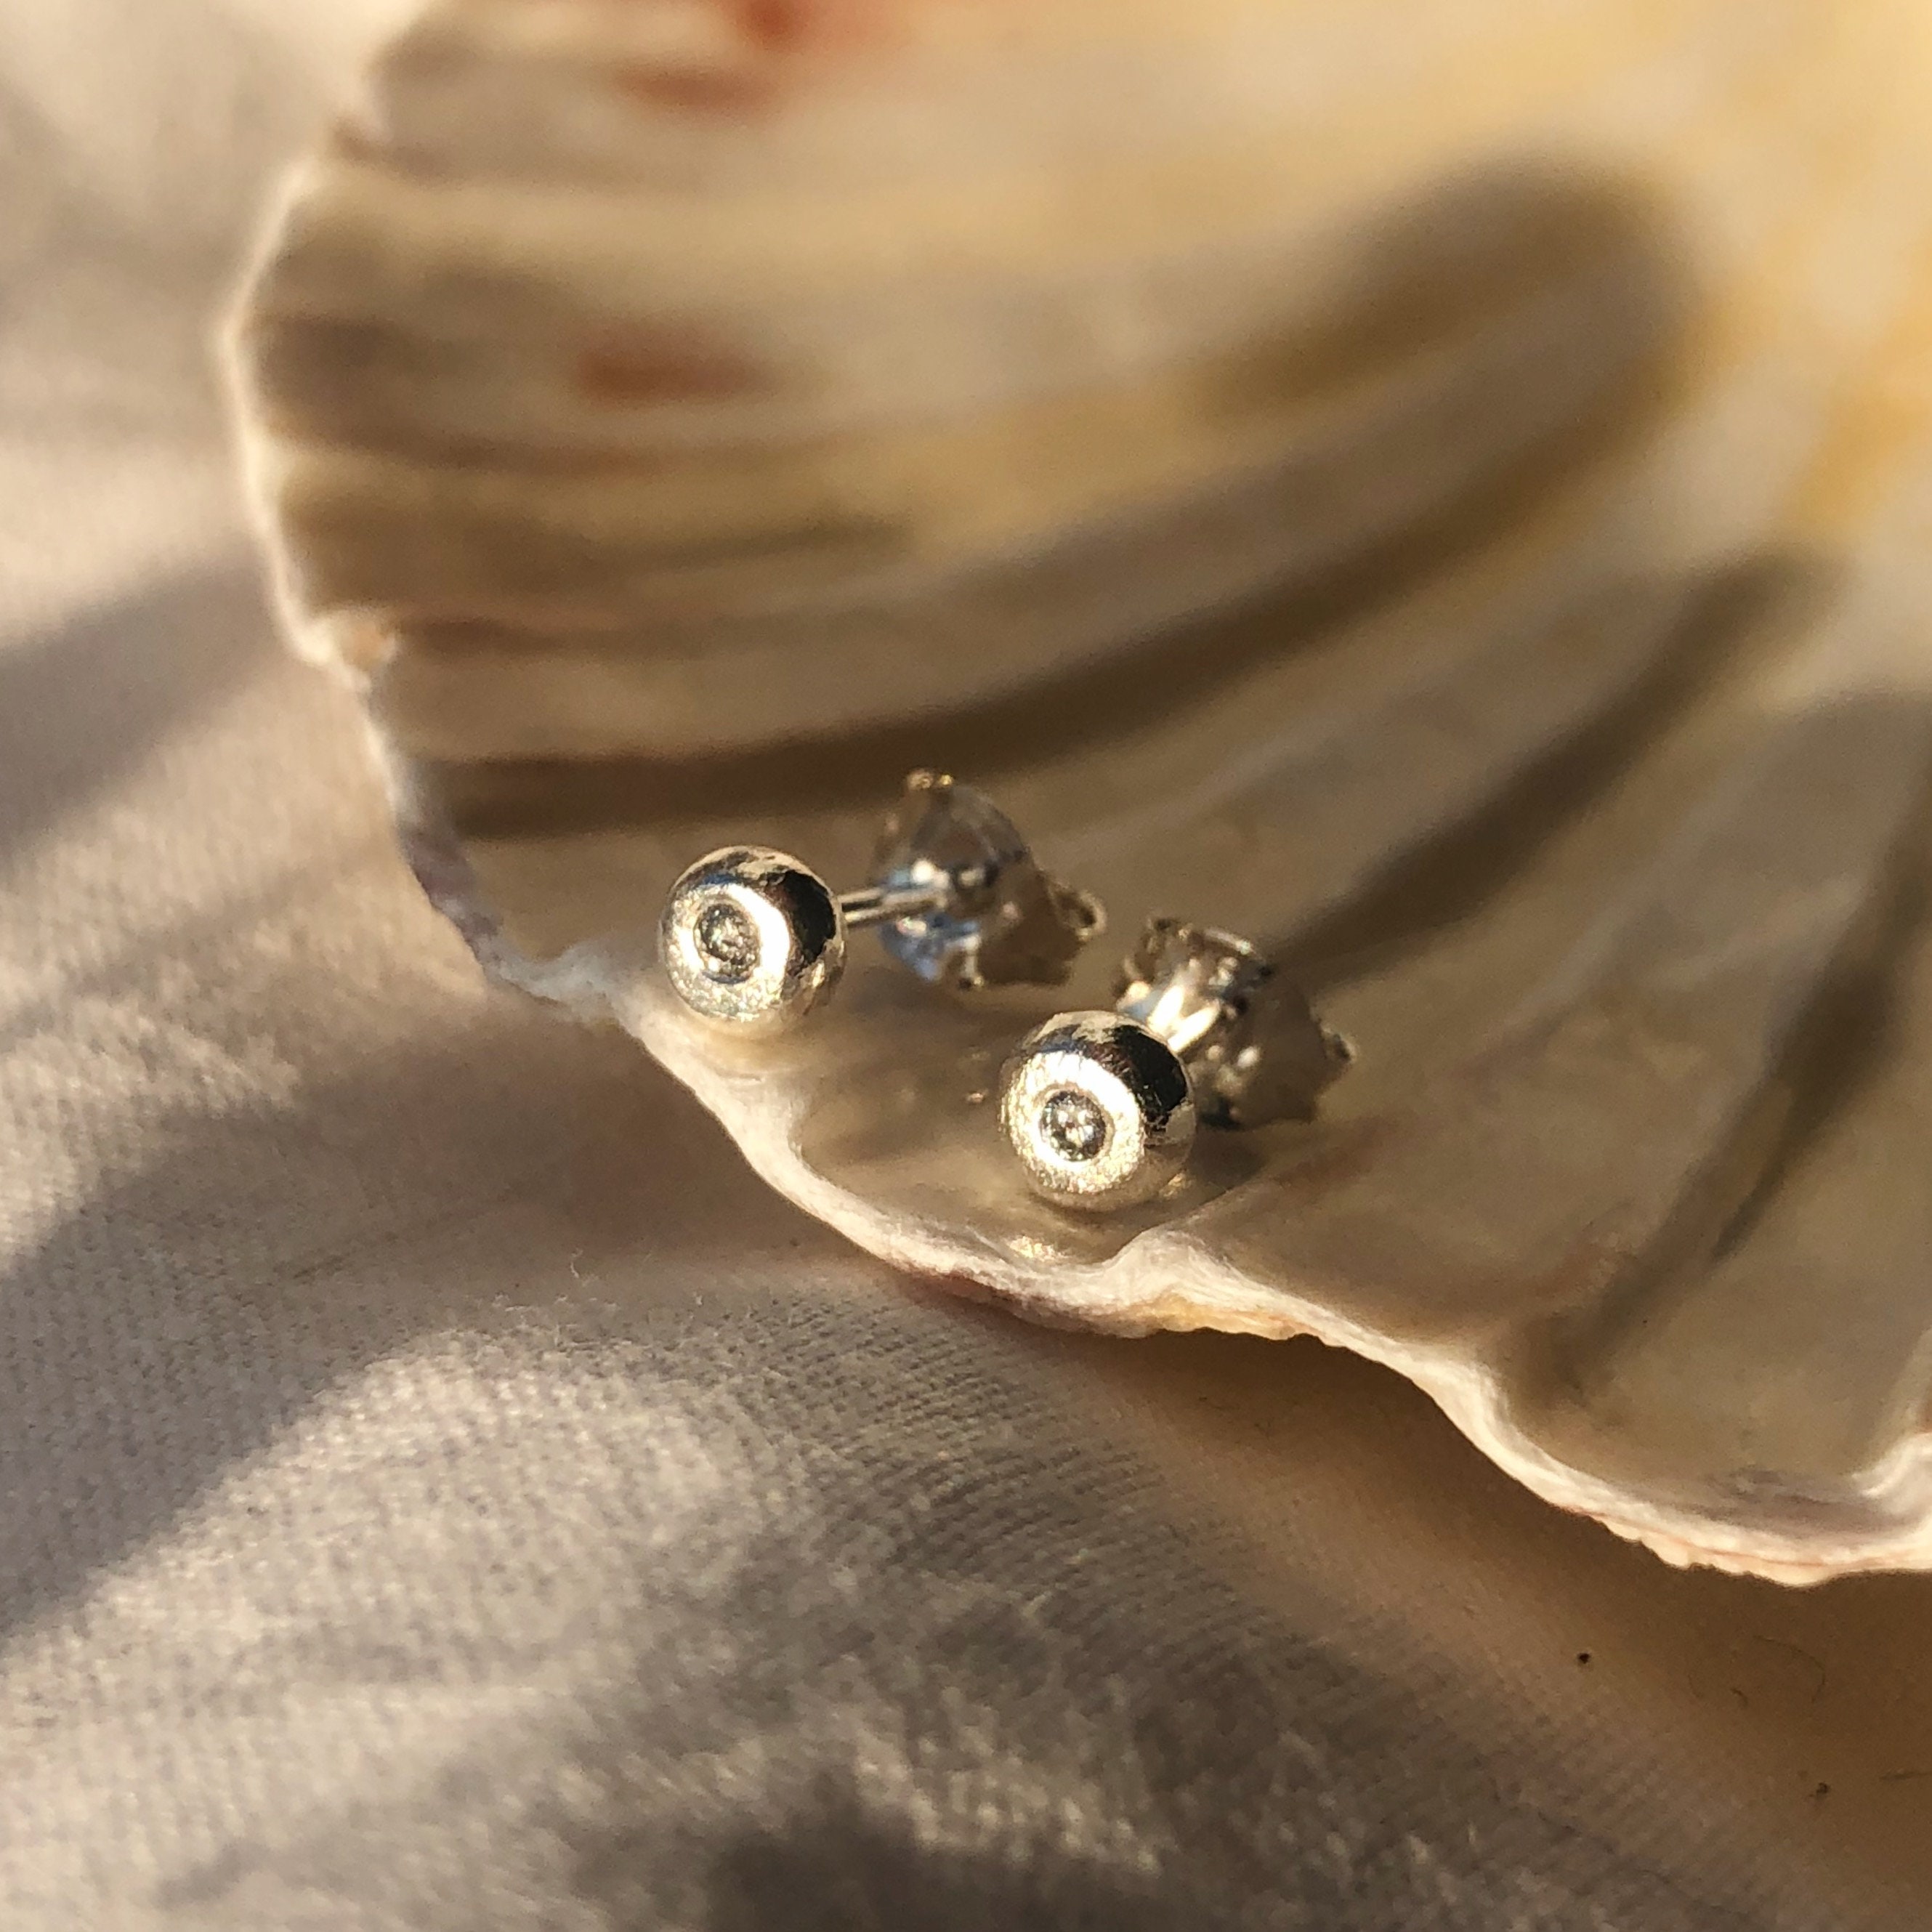 Recycled Silver Diamond Stud Earrings - Salt & Pepper Studs Gifts For Her Handmade Diamond Earrings